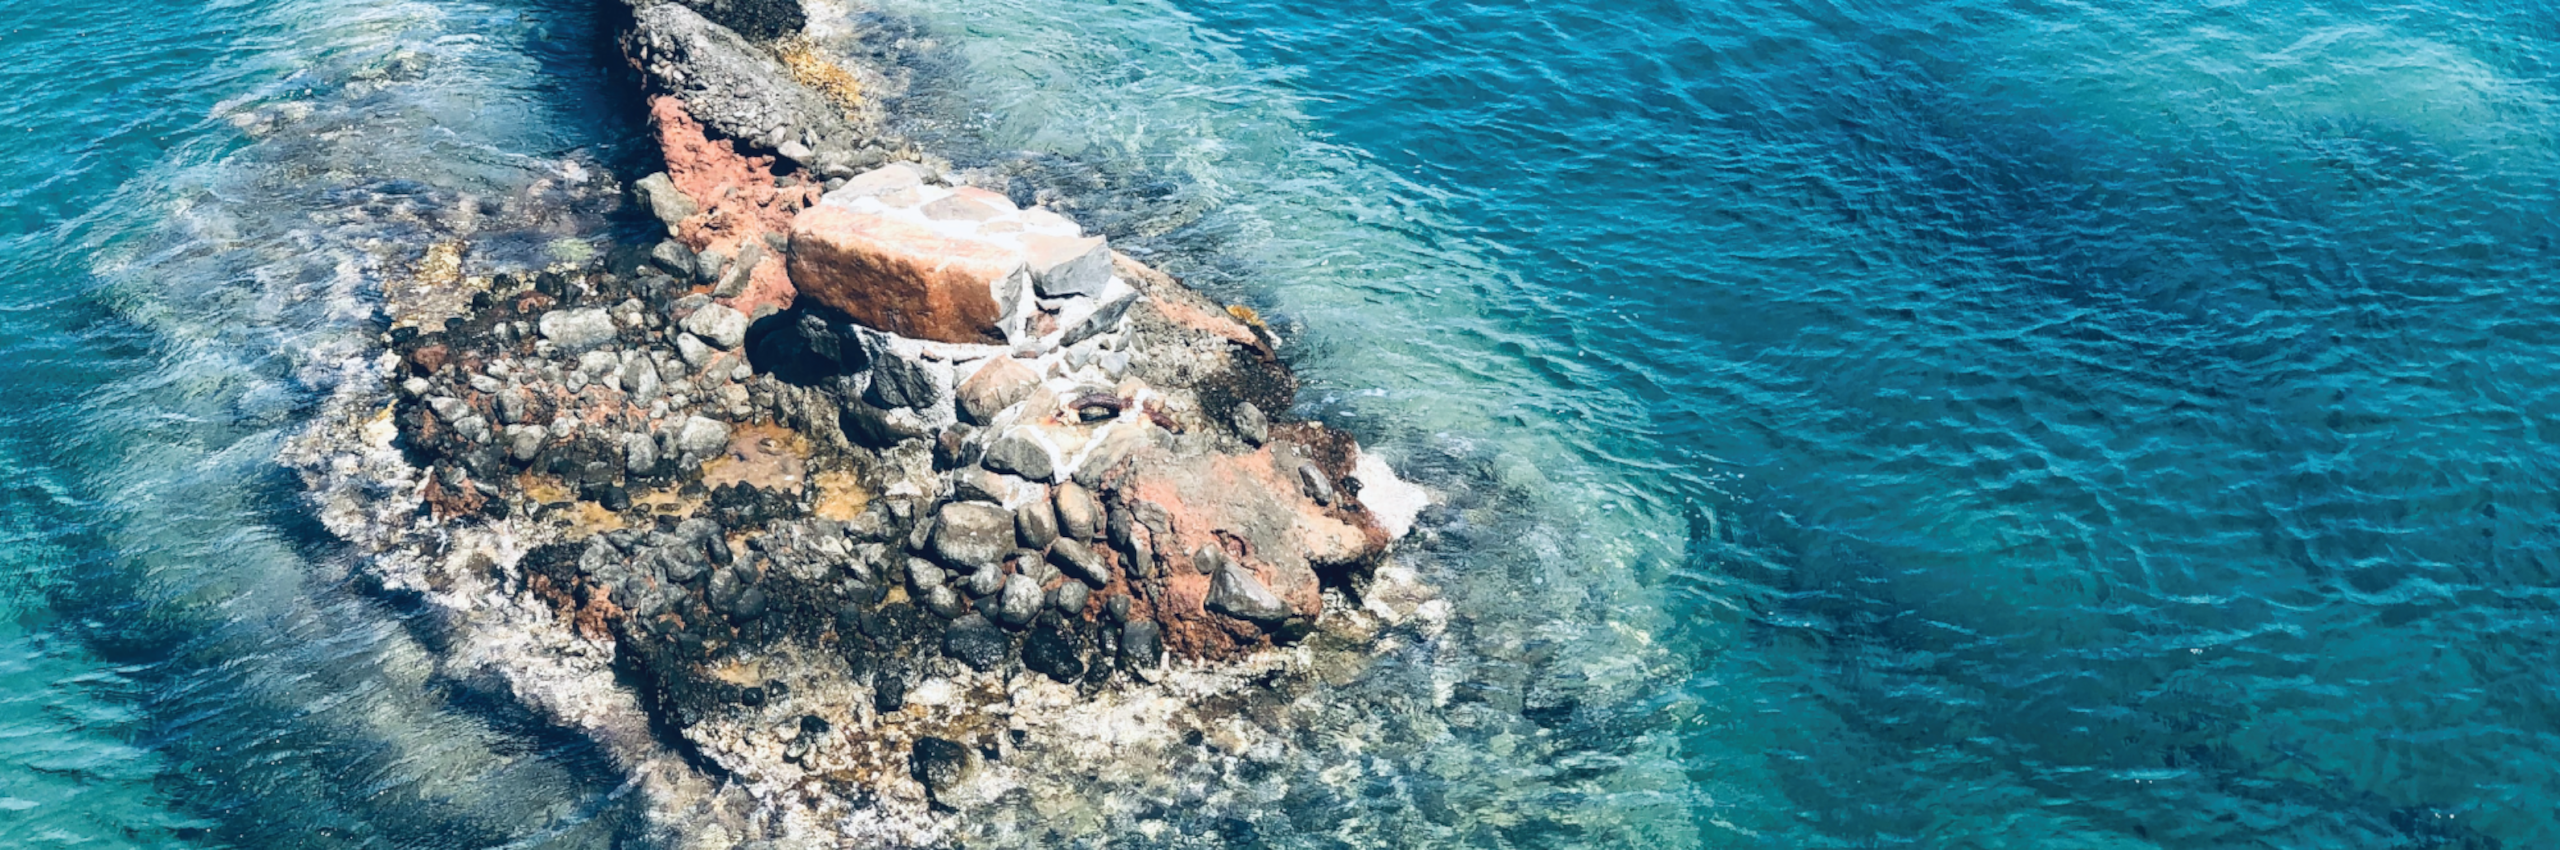 Aerial view of rocks in the blue ocean.